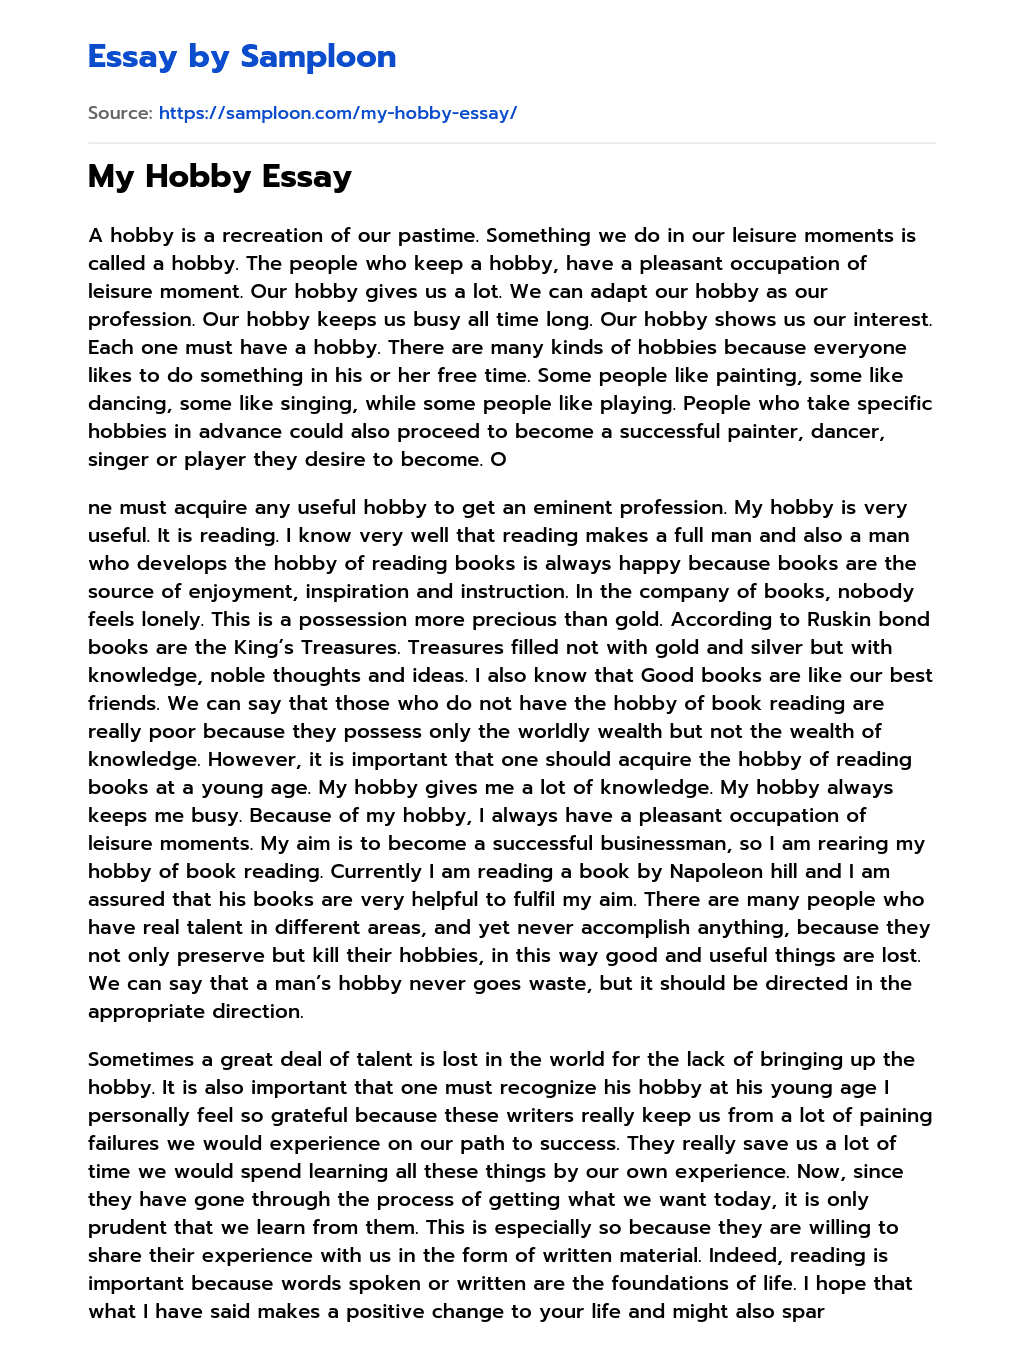 my hobby essay examples